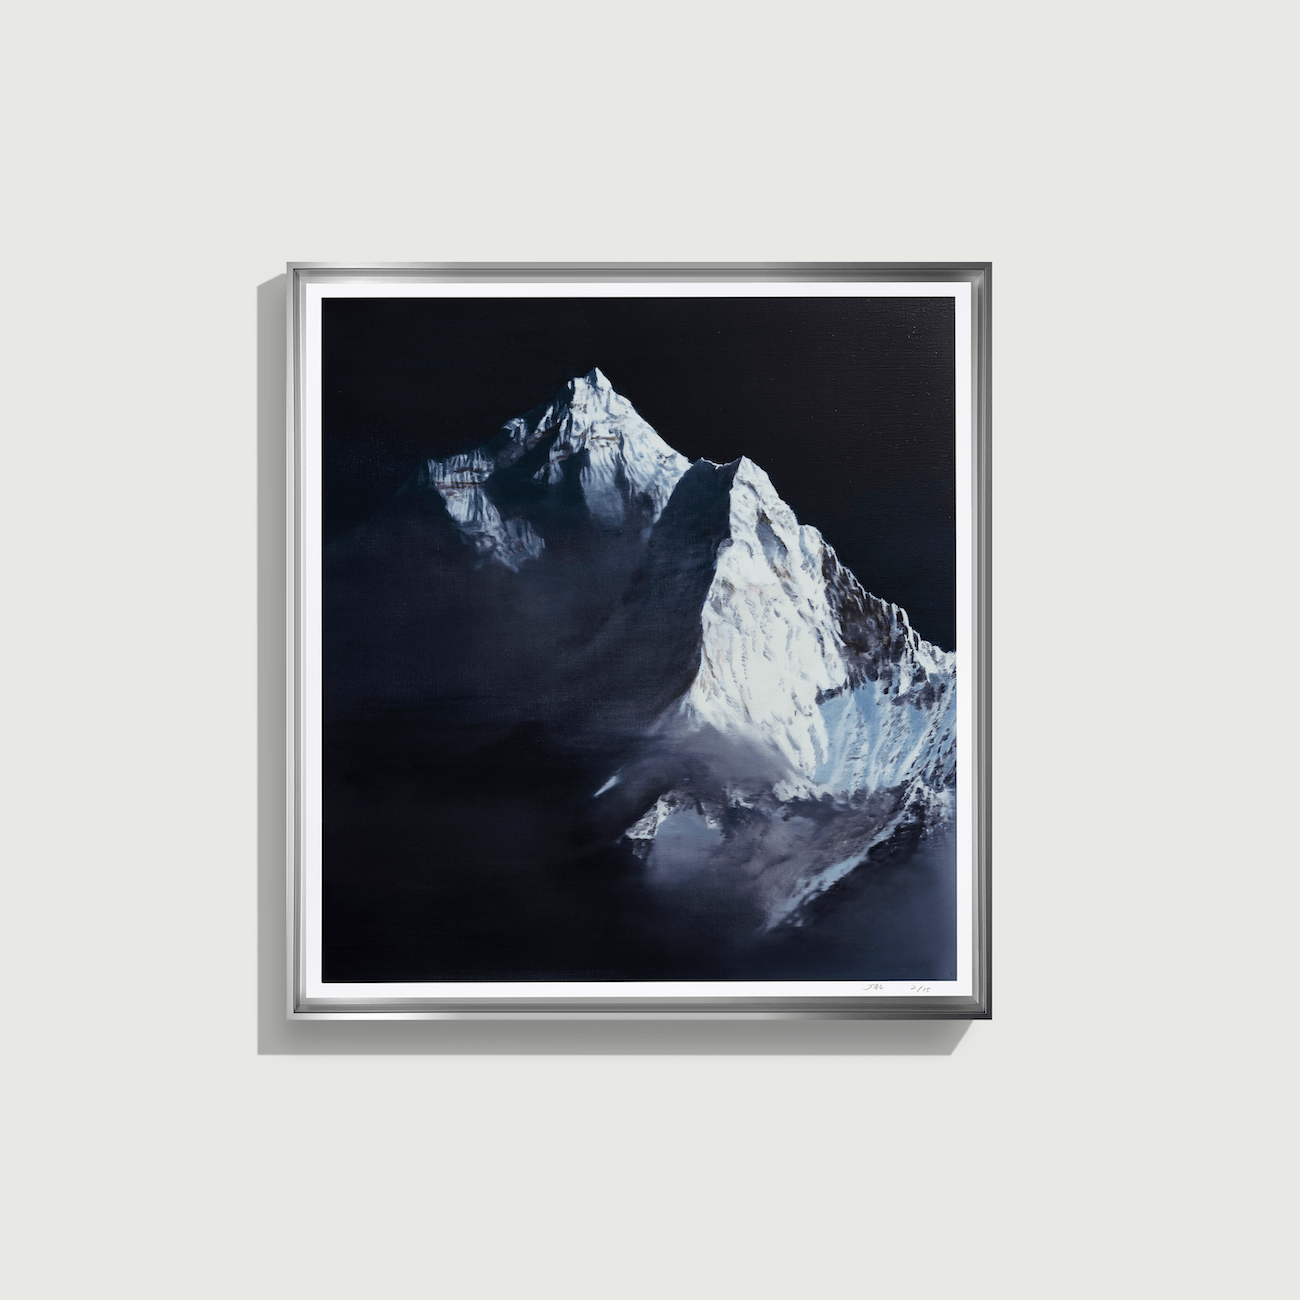 Jia Aili - Untitled (Snow Mountain)